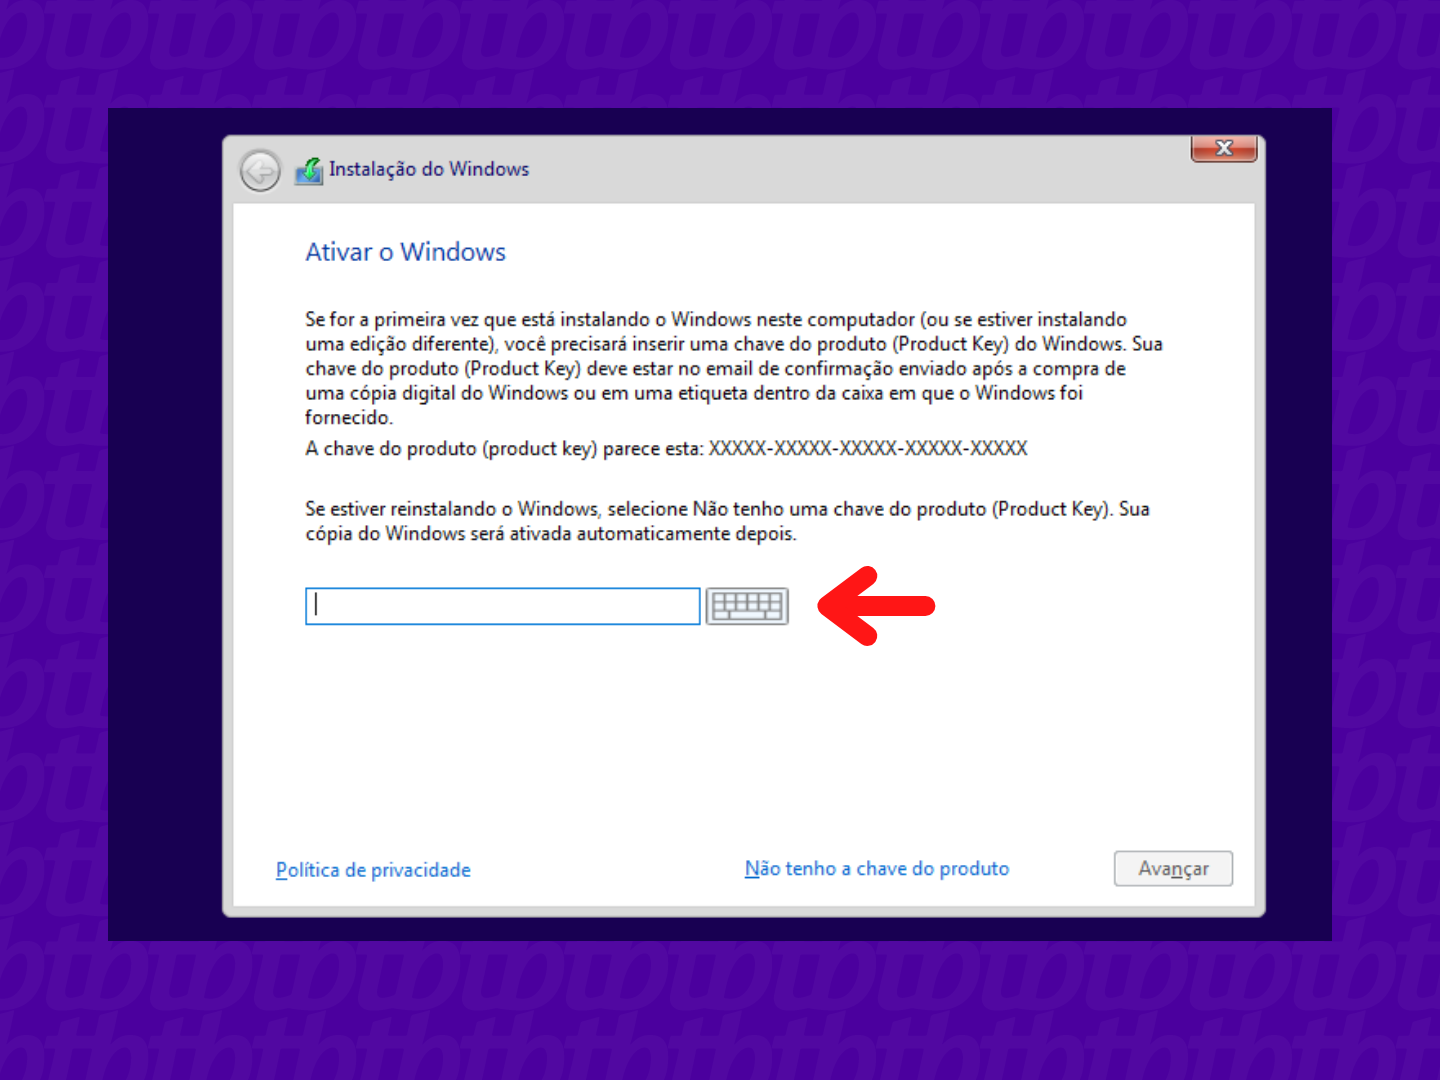 Tela de instalação do Windows 10 com seta indicando campo para digitar chave de produto